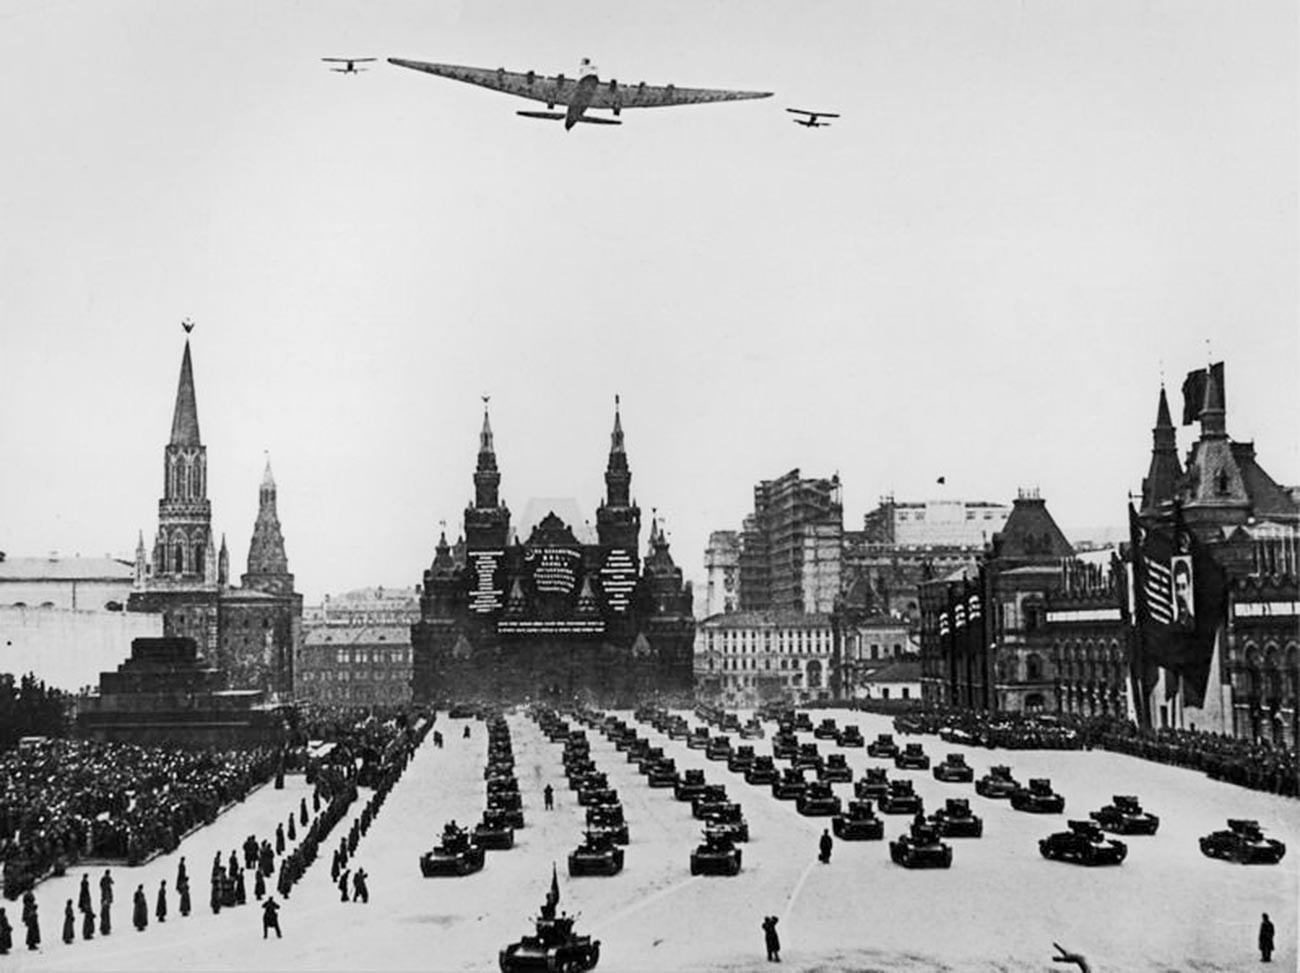 赤の広場の上に飛んでいる「マクシム・ゴーリキー」飛行機